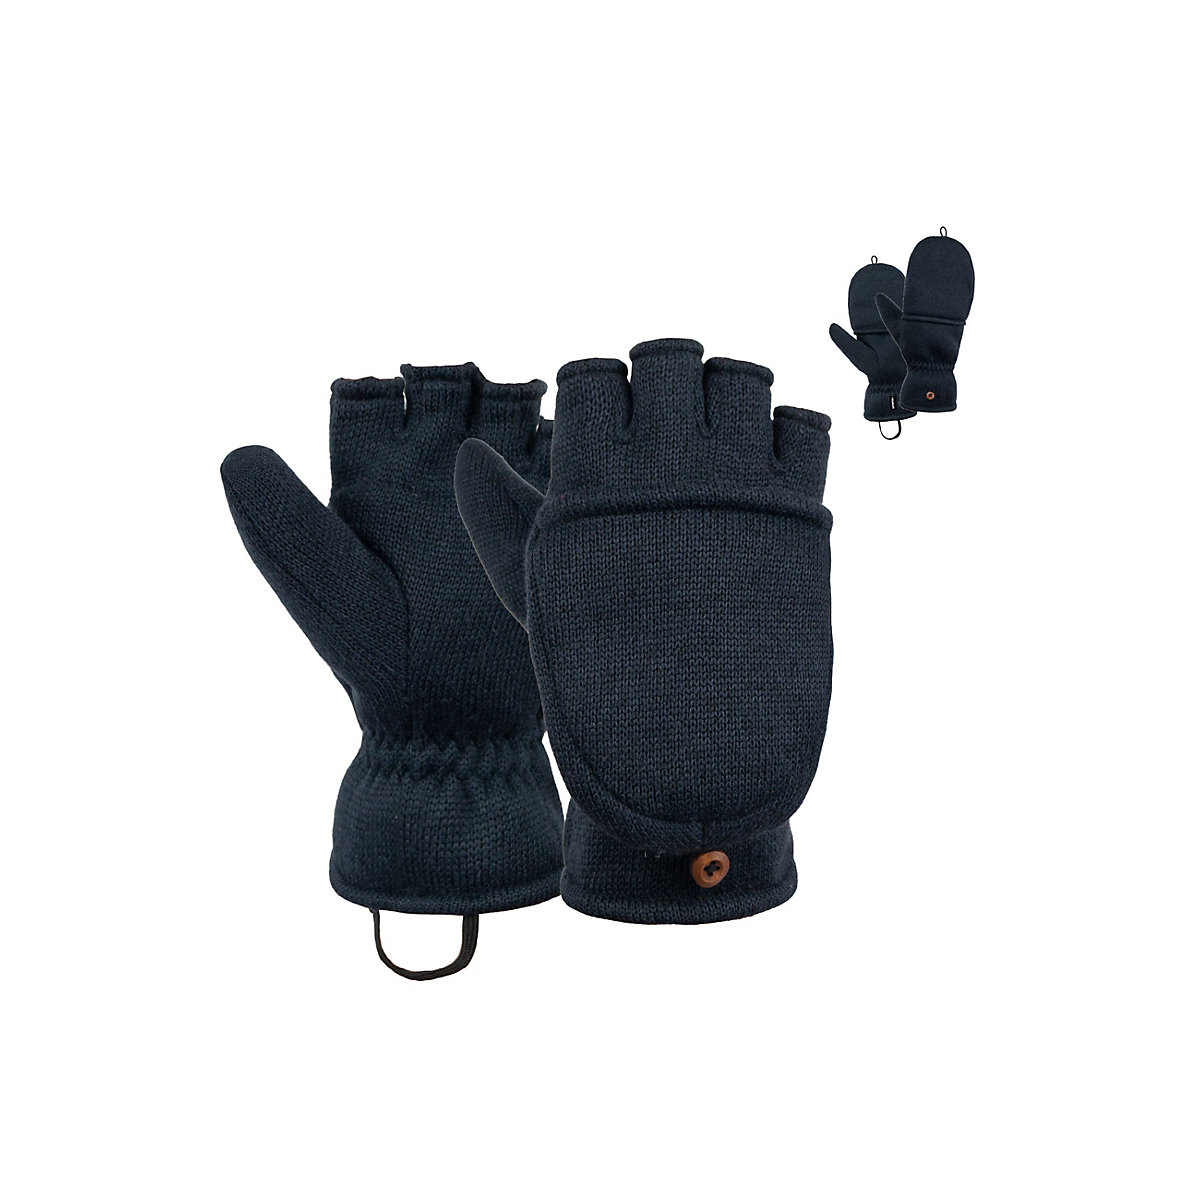 Reusch Fleece Handschuhe Comfy dunkelblau